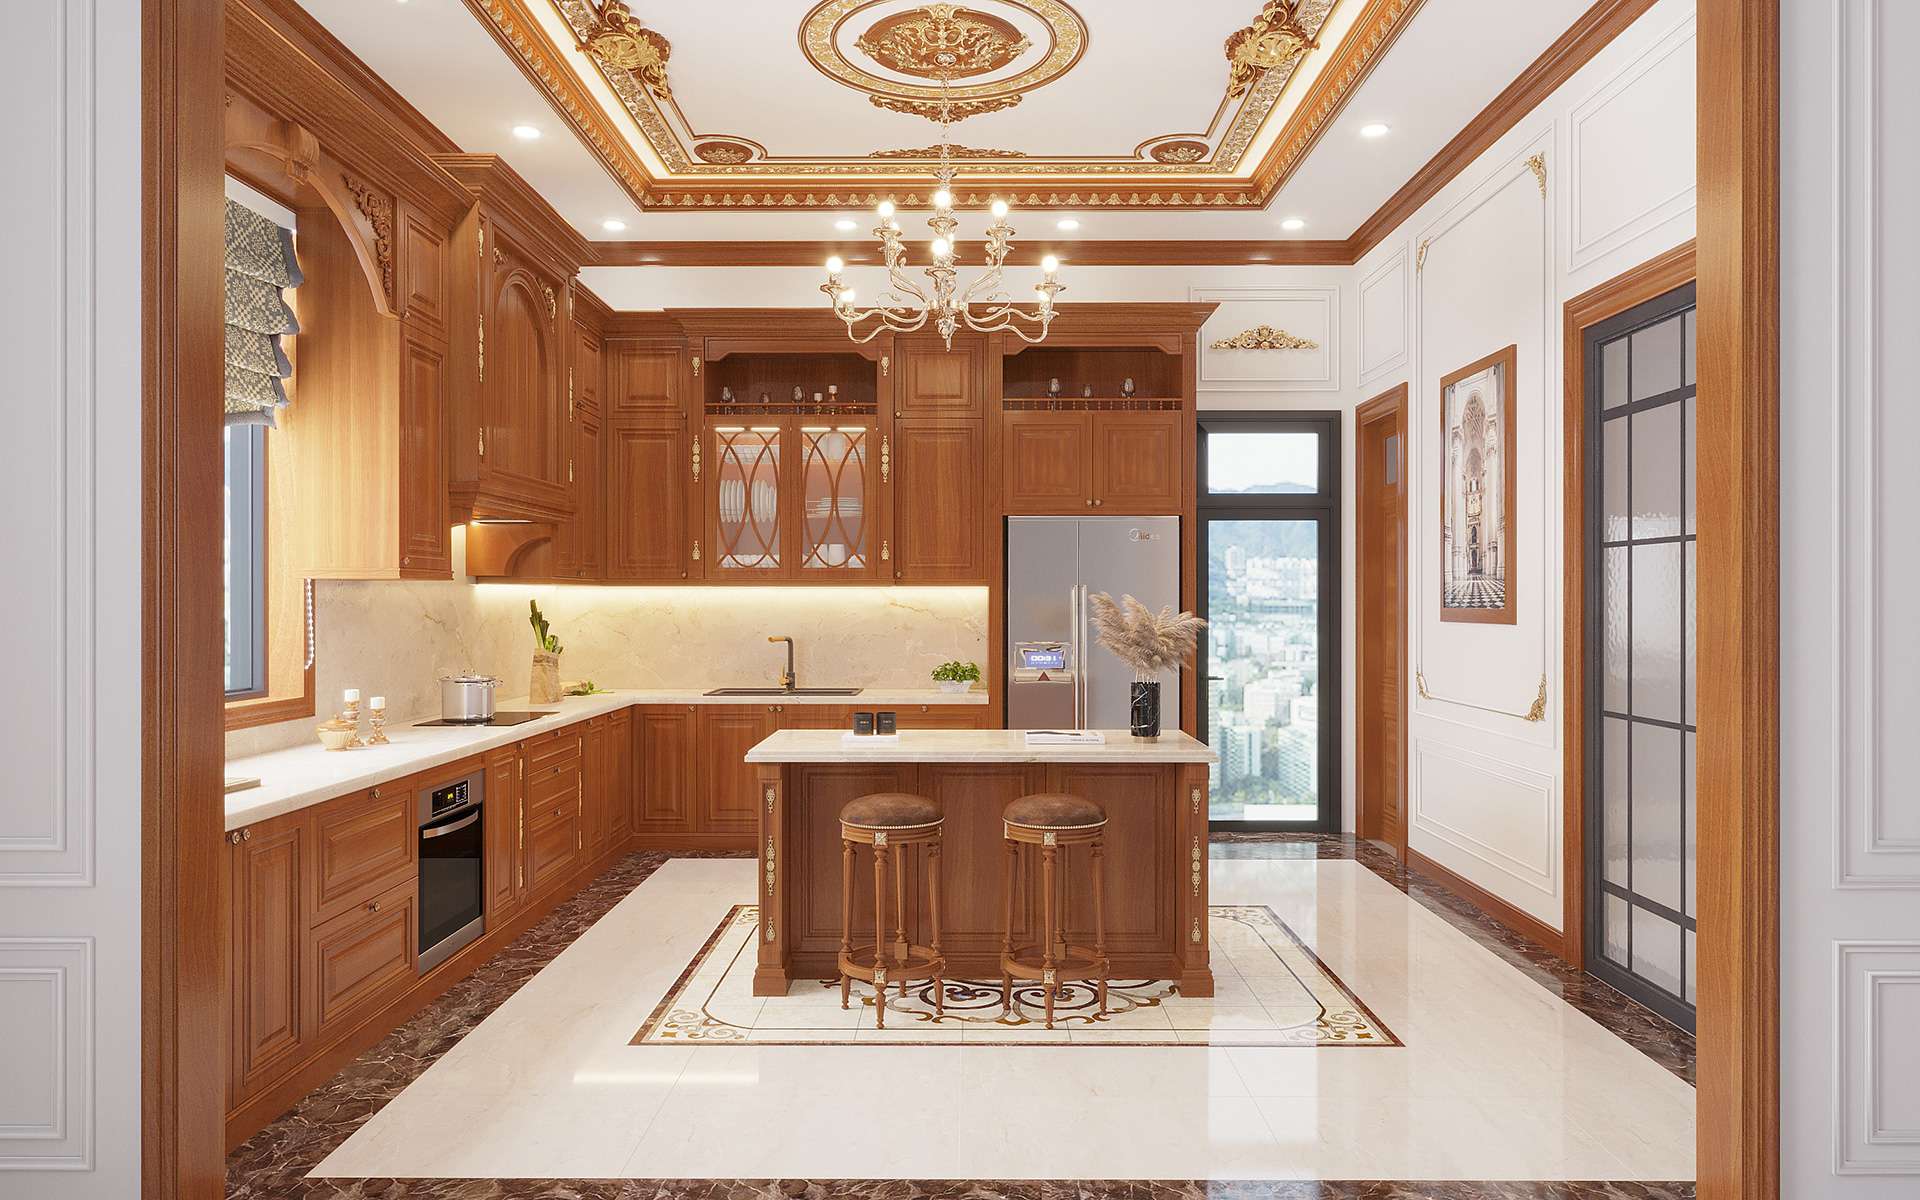 Nội thất phòng bếp bằng gỗ phong cách tân cổ điển vẫn có sức hút mạnh mẽ